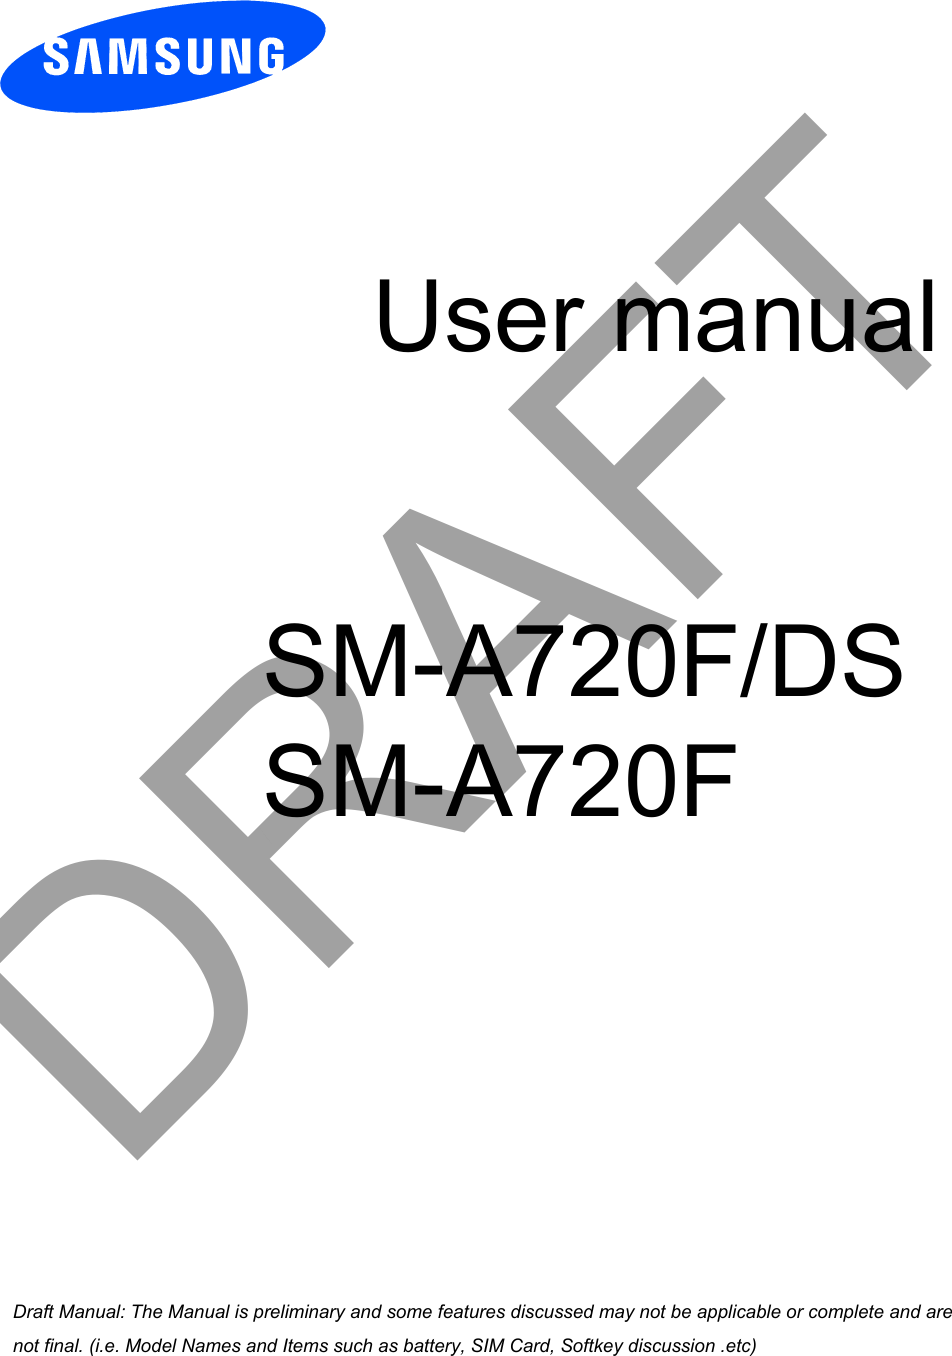 User manualSM-A720F/DSSM-A720FDRAFTa ana  ana  na and  a dd a n  aa   and a n na  d a and   a a  ad  dn 